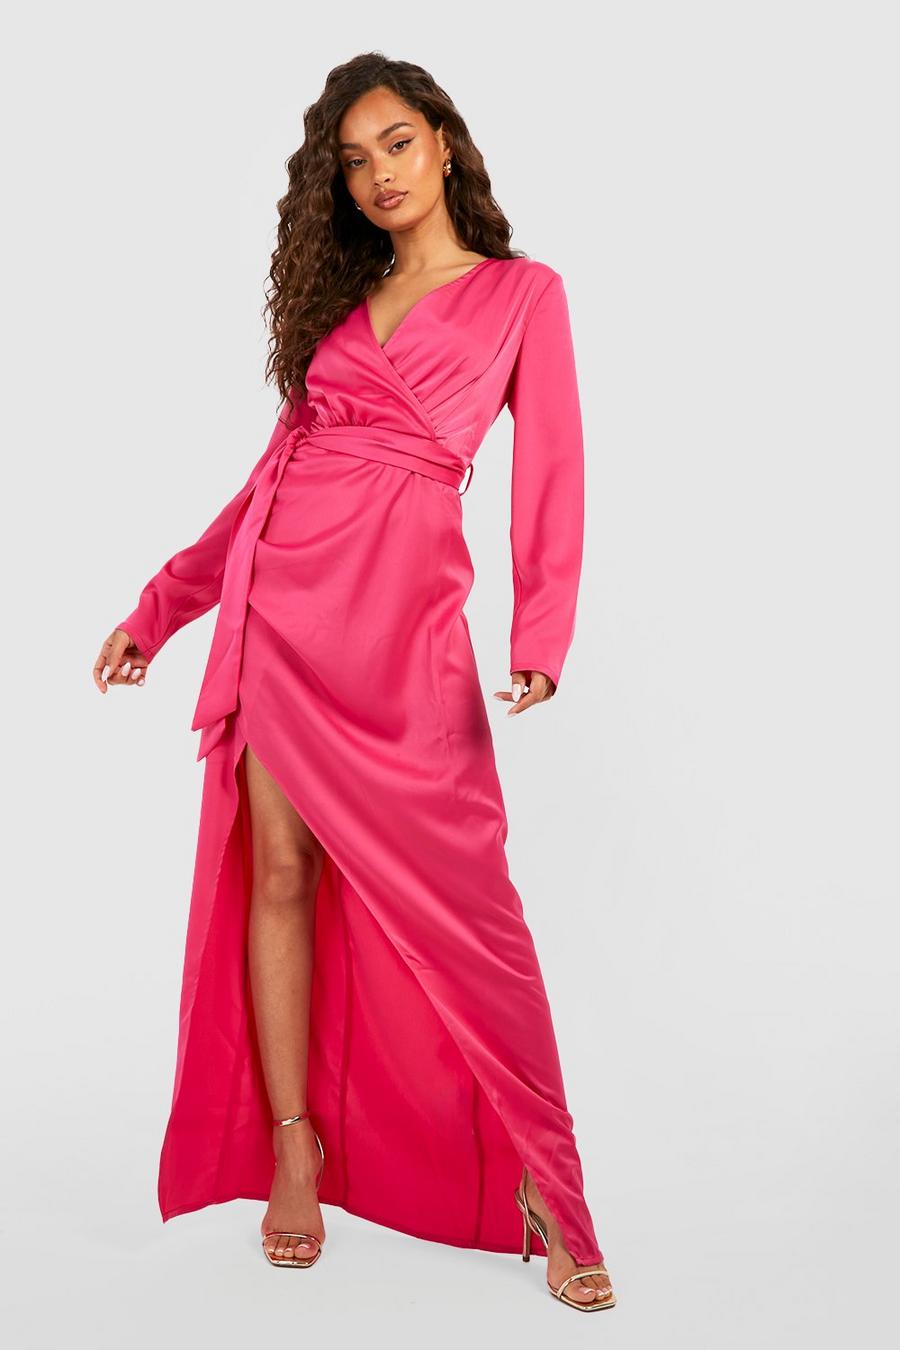 Hot pink Satin Long Sleeve Wrap Front Maxi Dress